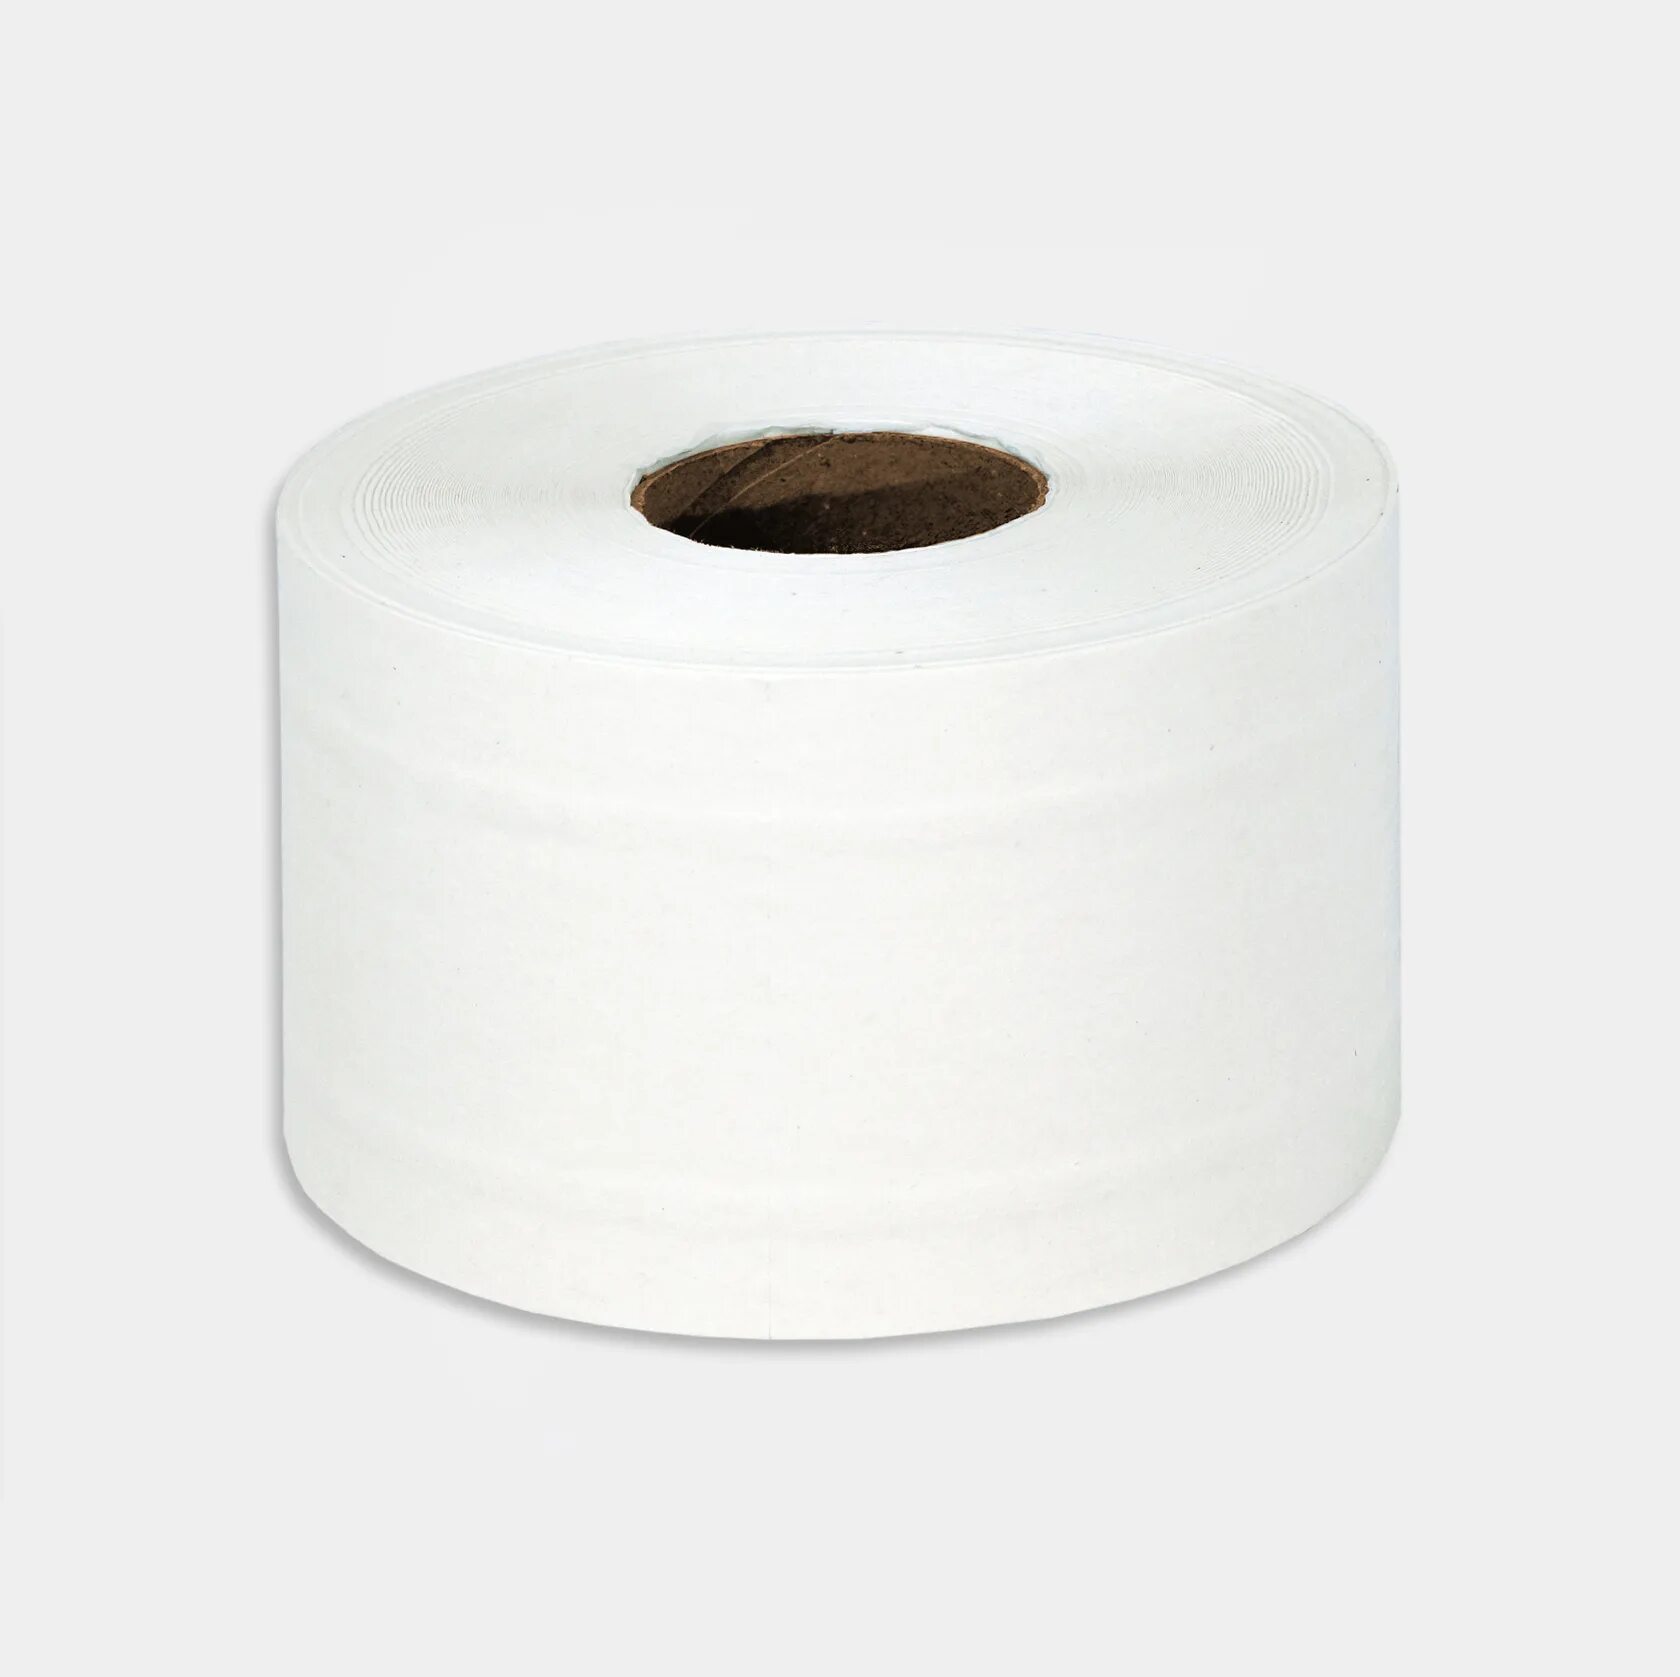 Т/бумага в рул. Lime 2-сл, 180м, белая (10.180). Туалетная бумага Lime. Рулонови туалетная бумага. Туалетная бумага на паллете.